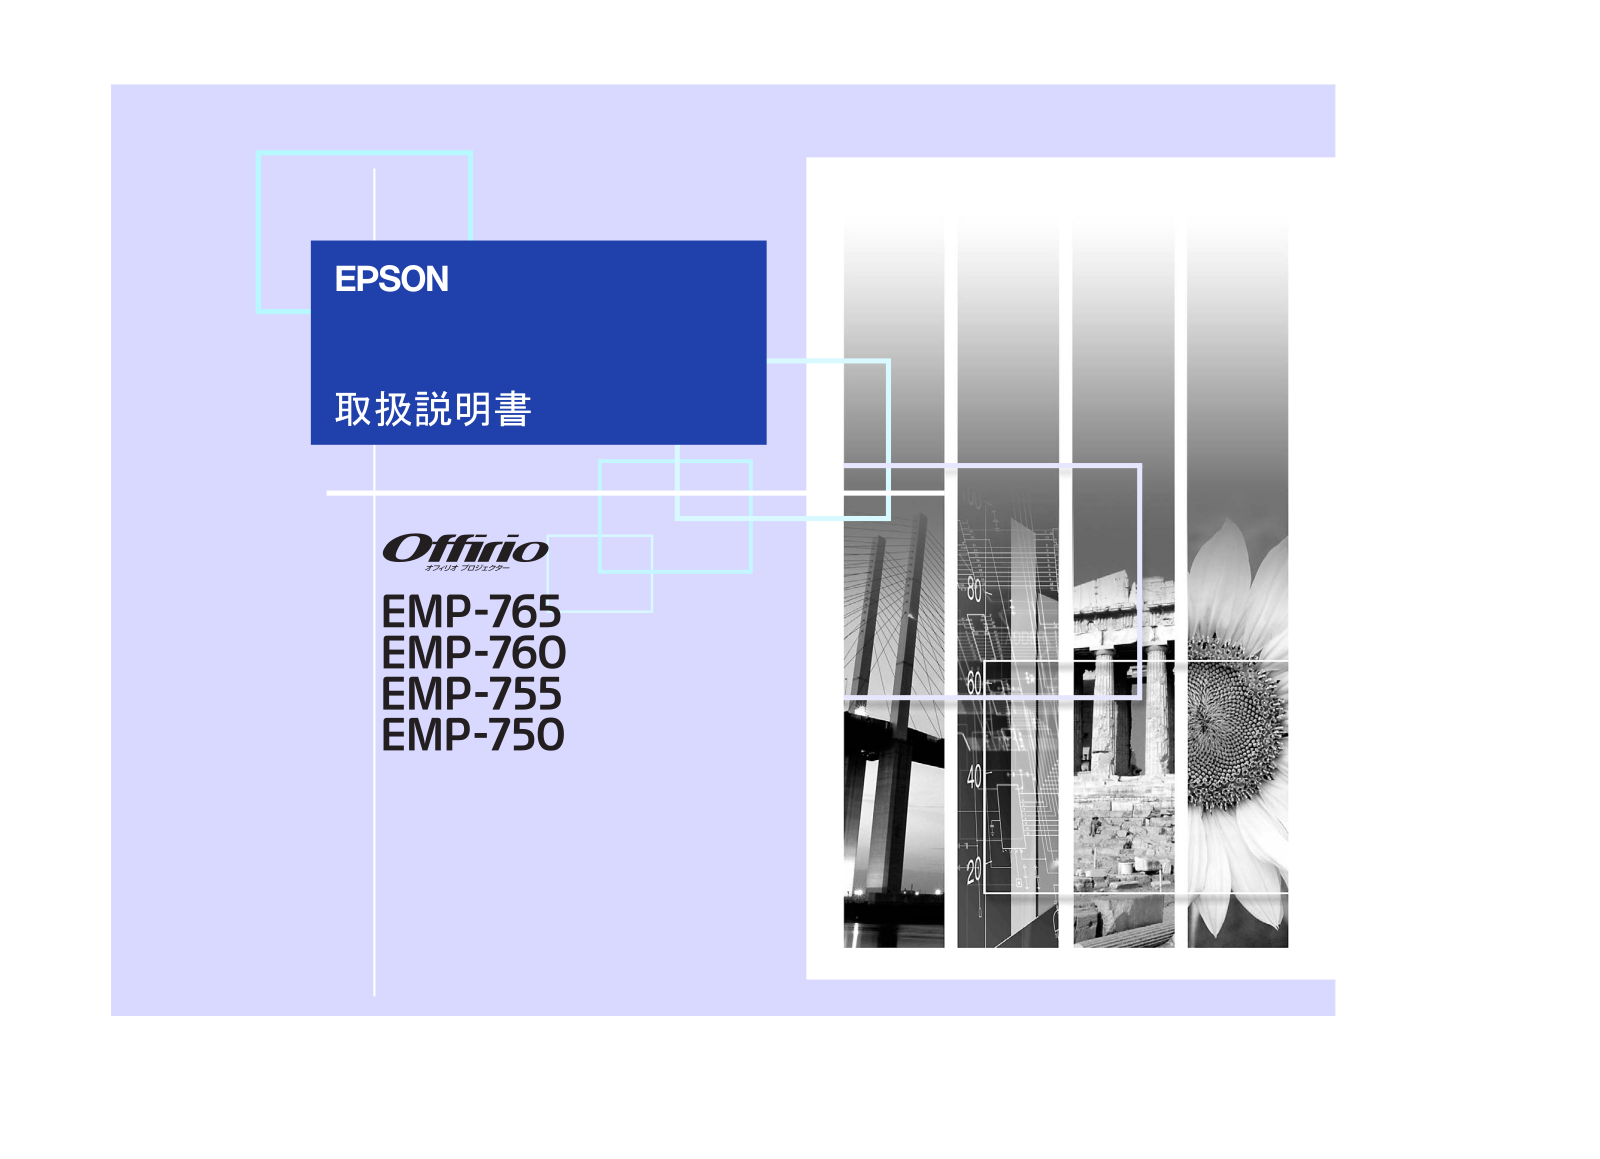 Epson EMP-750, EMP-765, EMP-755, EMP-760 User Manual